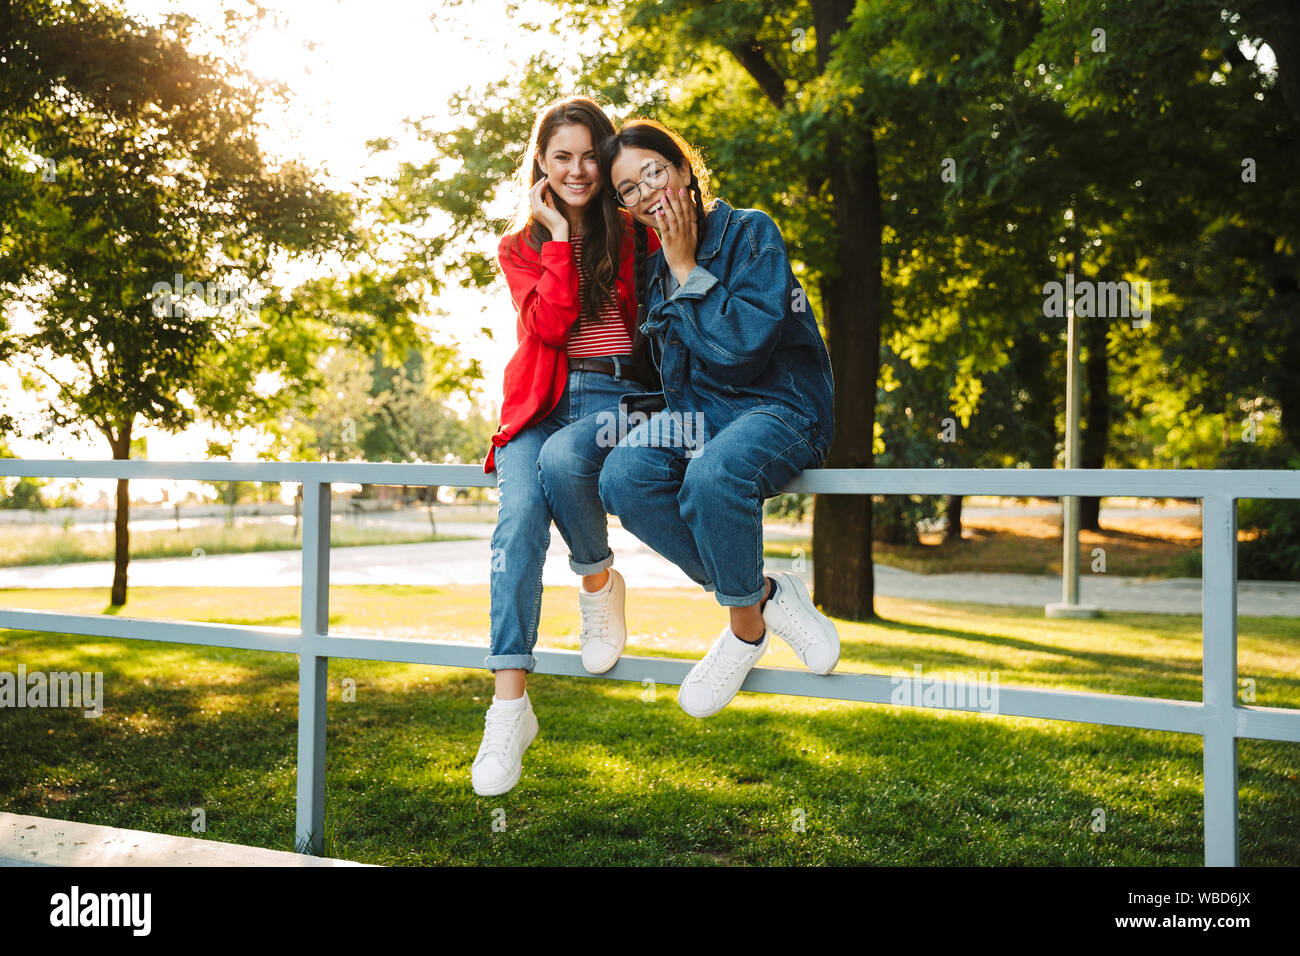 Image de deux élèves filles joyeux et souriant hugging while sitting on railing in green park Banque D'Images